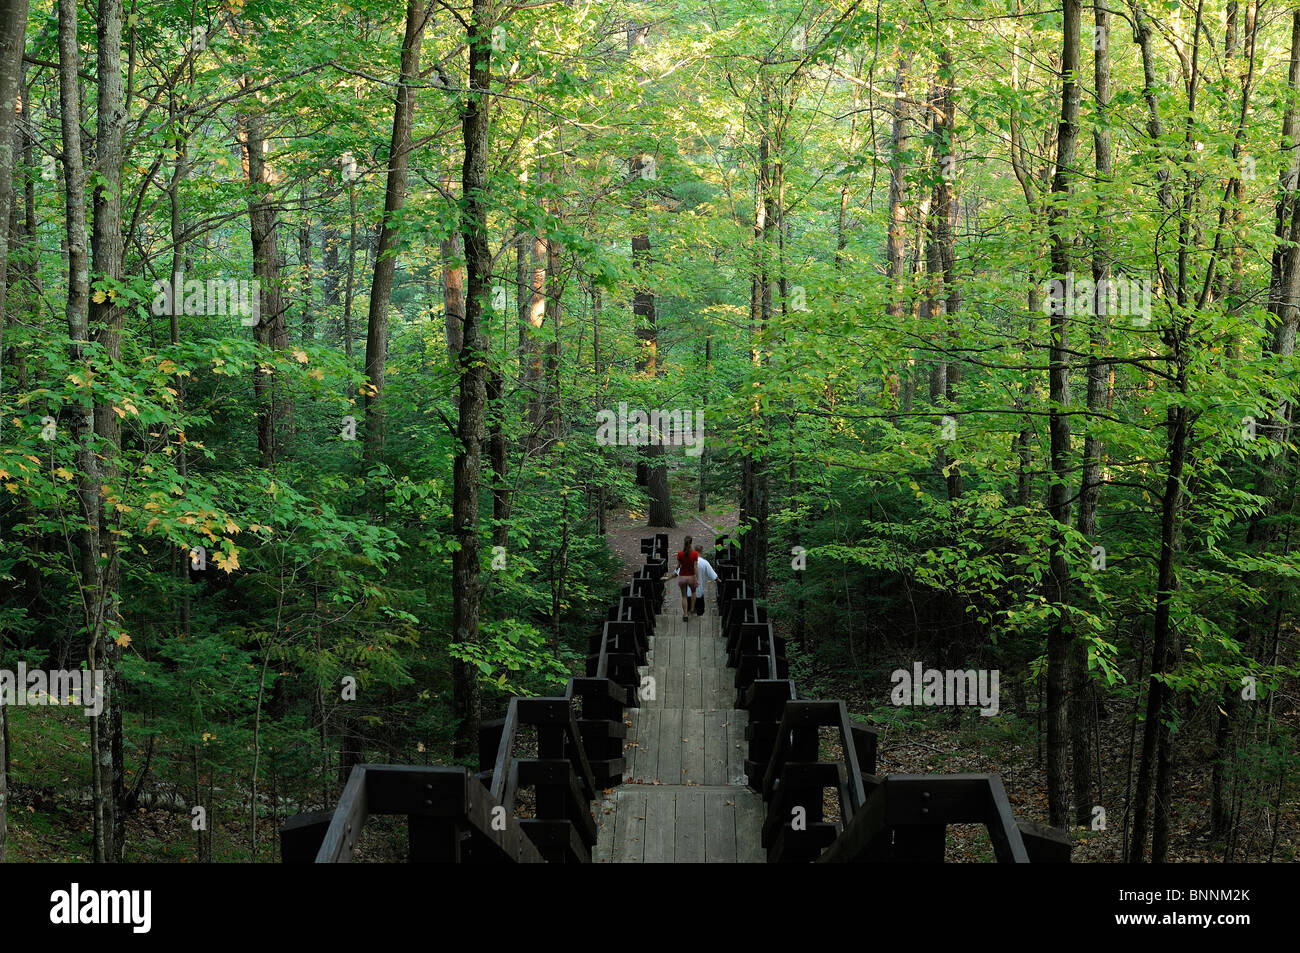 Holztreppe Kupfer fällt State Park Wisconsin USA Amerika Vereinigte Staaten von Amerika Treppen Wald Stockfoto